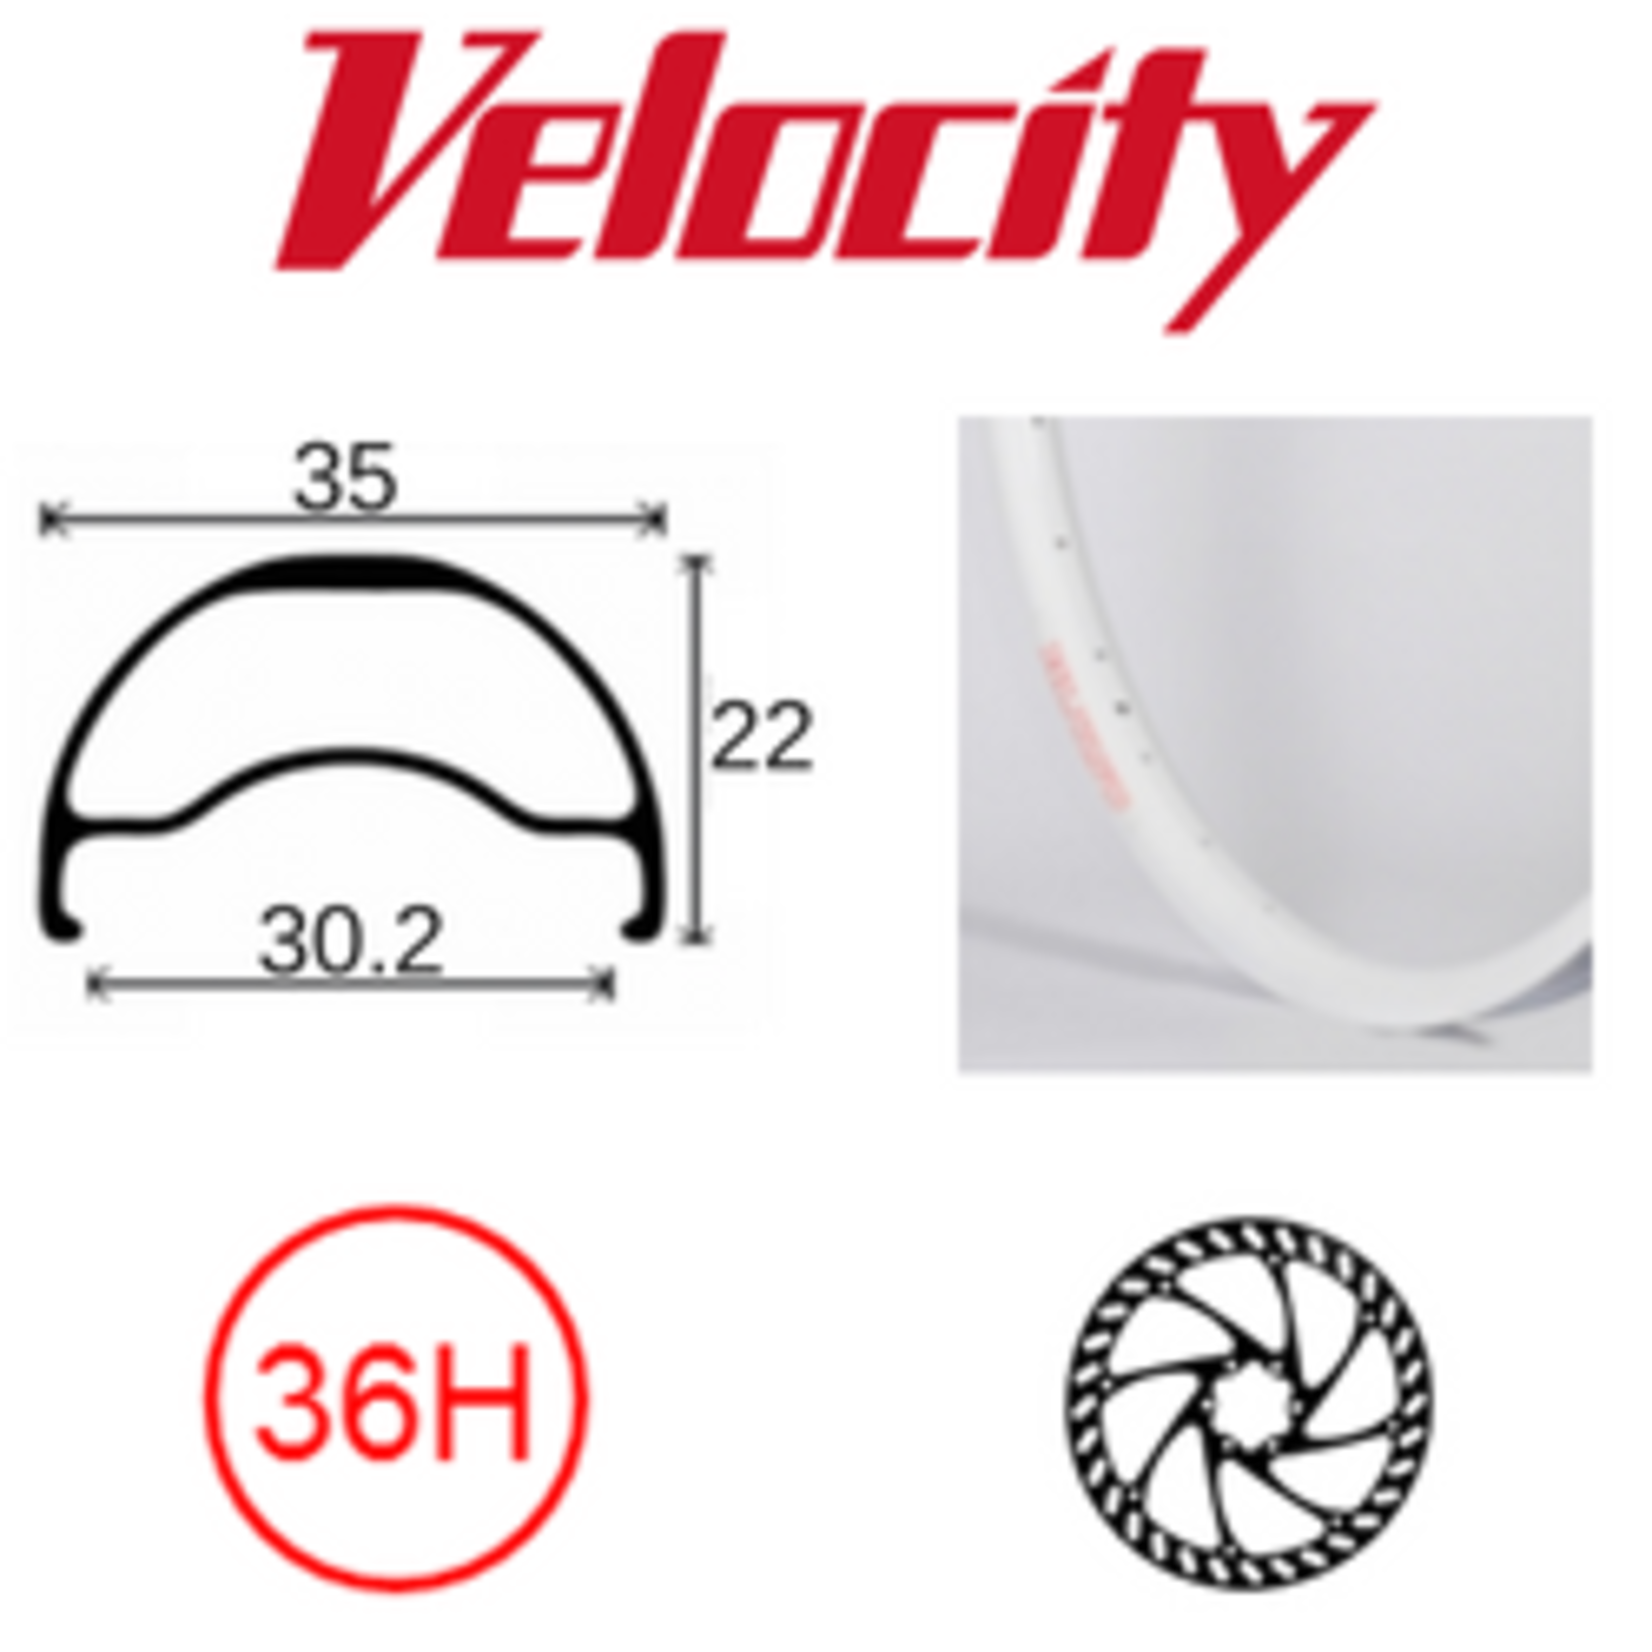 velocity Velocity Rim - Blunt 35- 26" (559) 36H - Presta Valve - Disc Brake - D/W - White